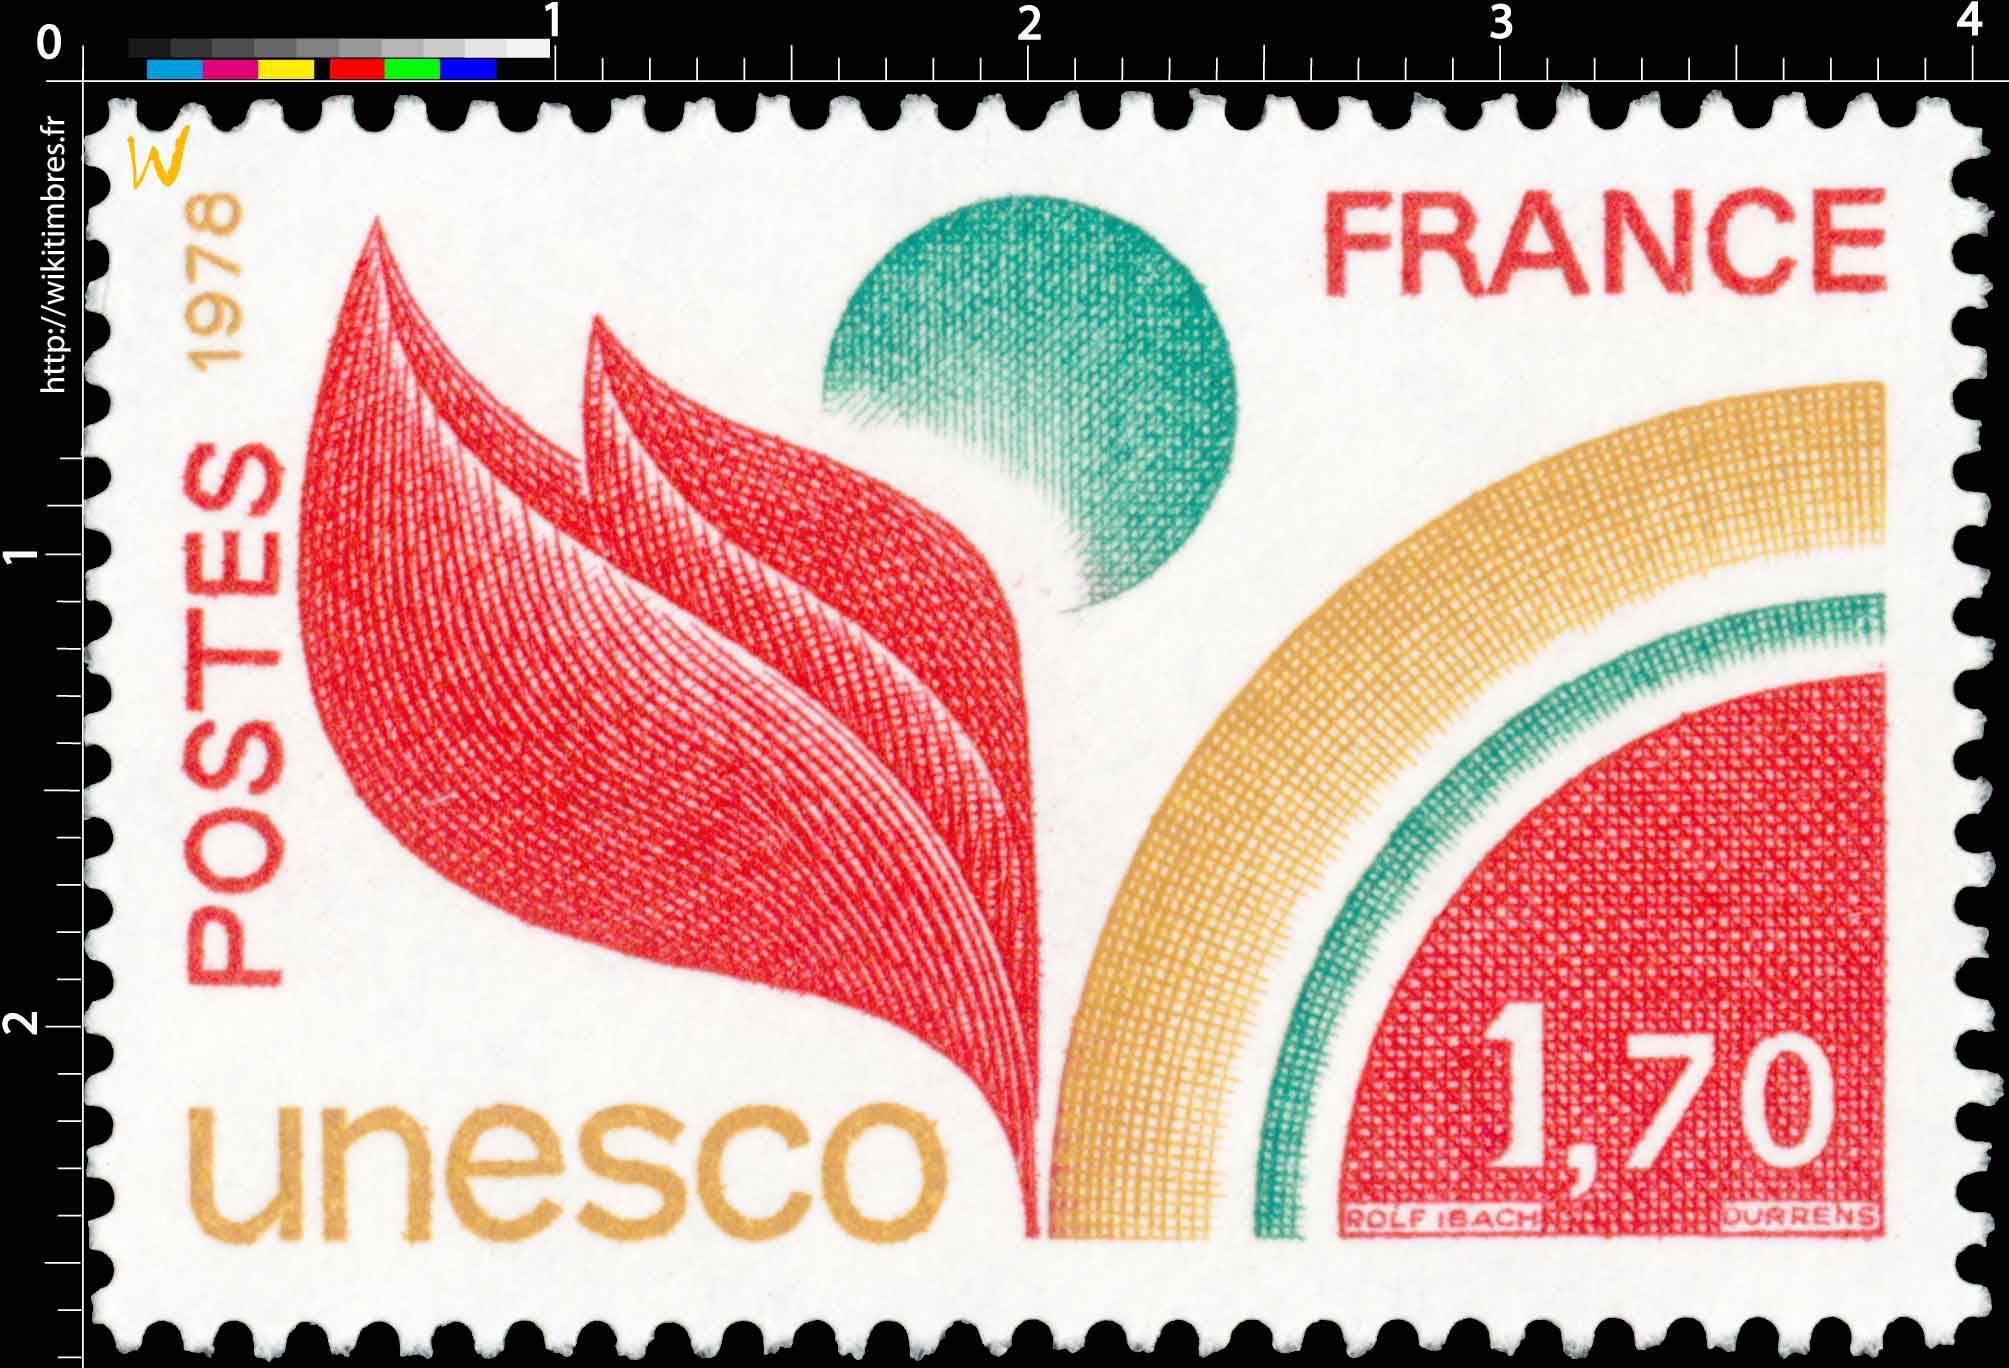 1978 Unesco